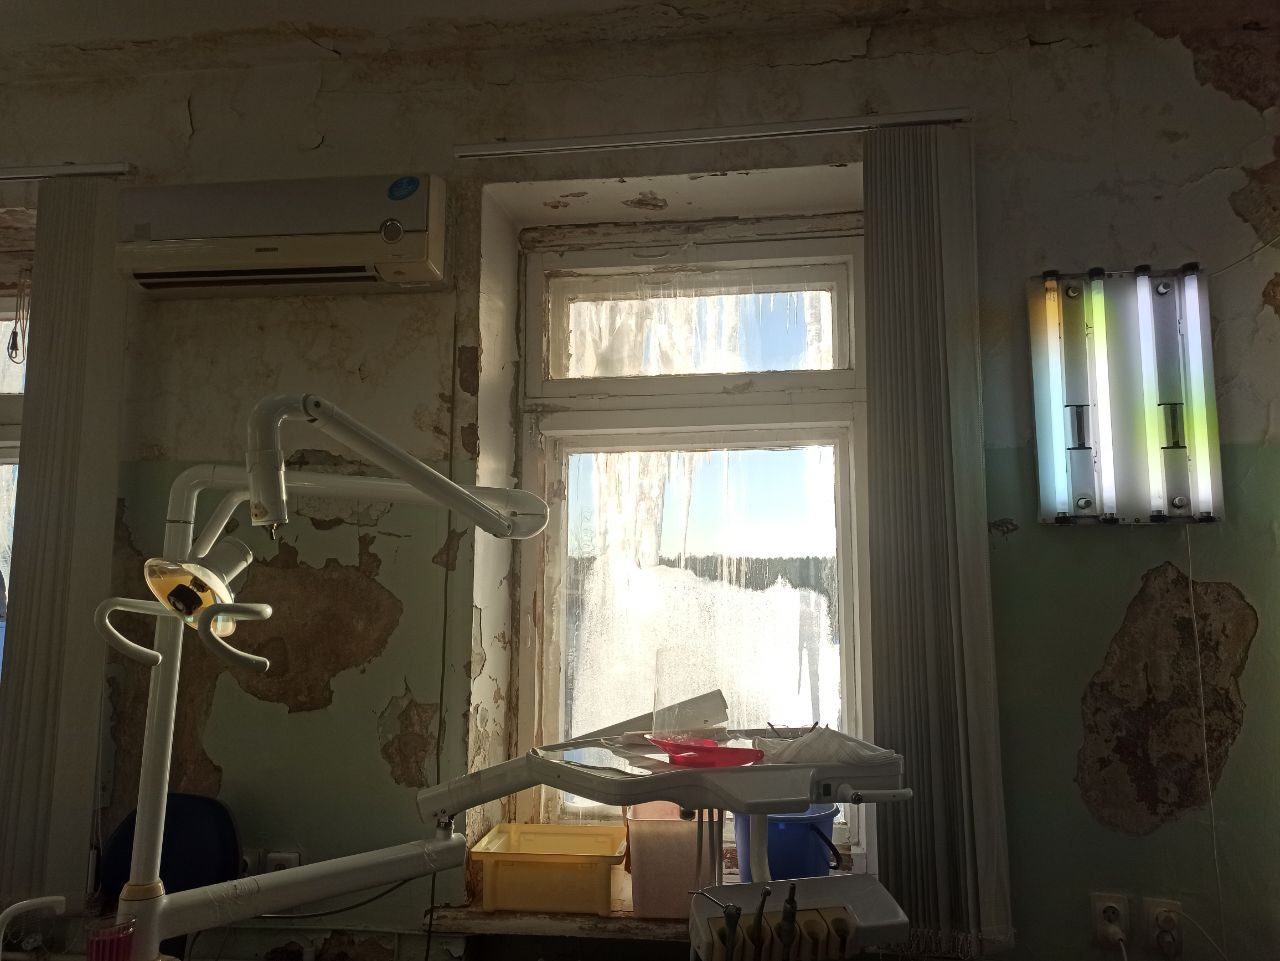 На стенах - пенициллин, на окнах - грибы. Это не фильм ужасов, а кабинет стоматологии